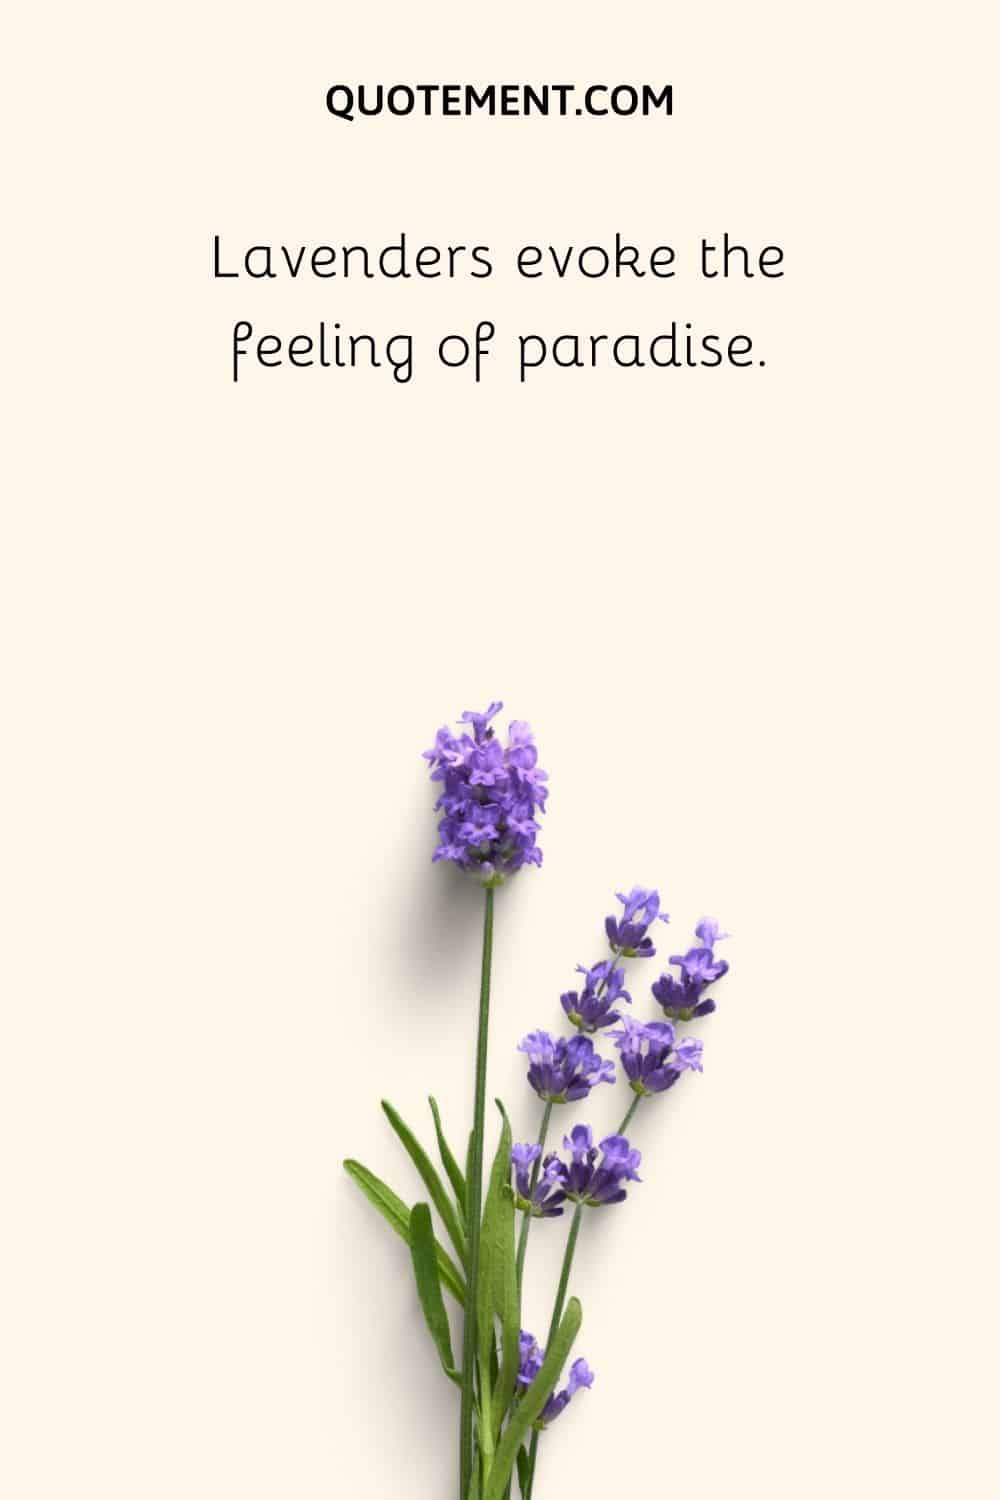 Lavenders evoke the feeling of paradise